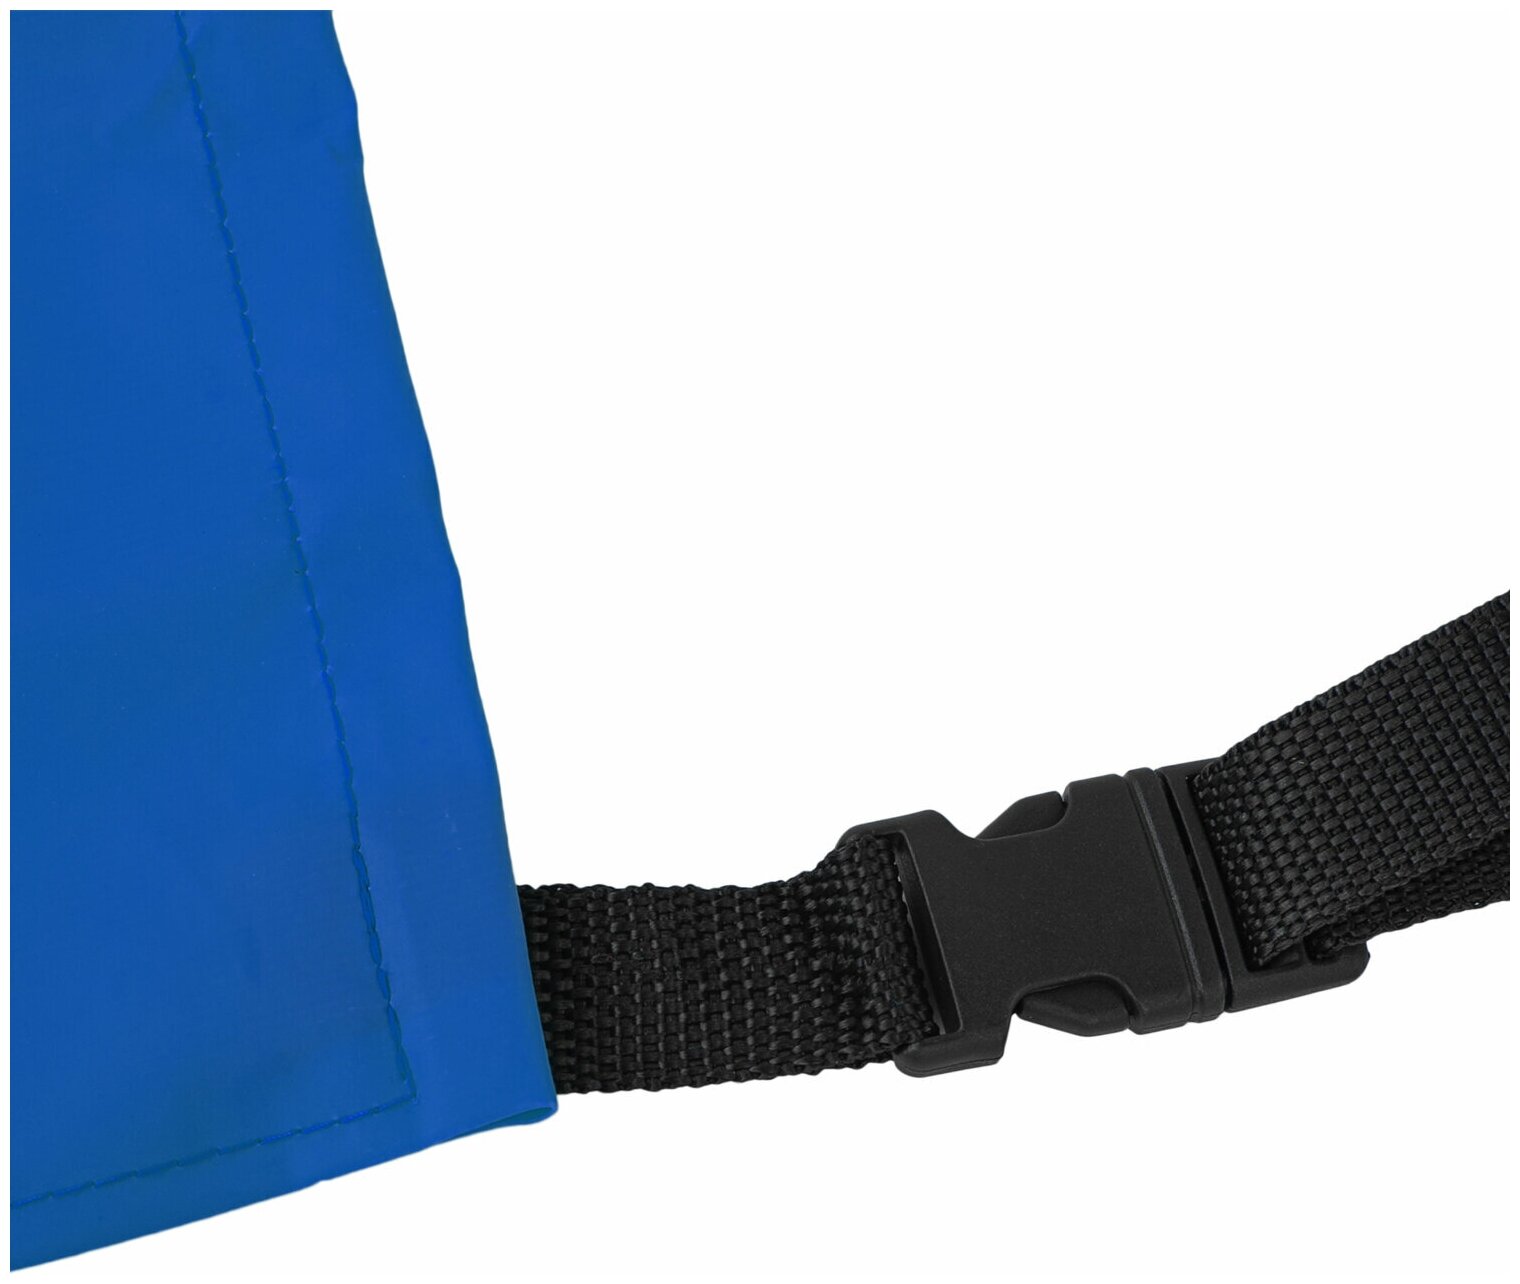 Фартук защитный из винилискожи КЩС, объем груди 104-112, рост 164-176, синий, грандмастер, 610871